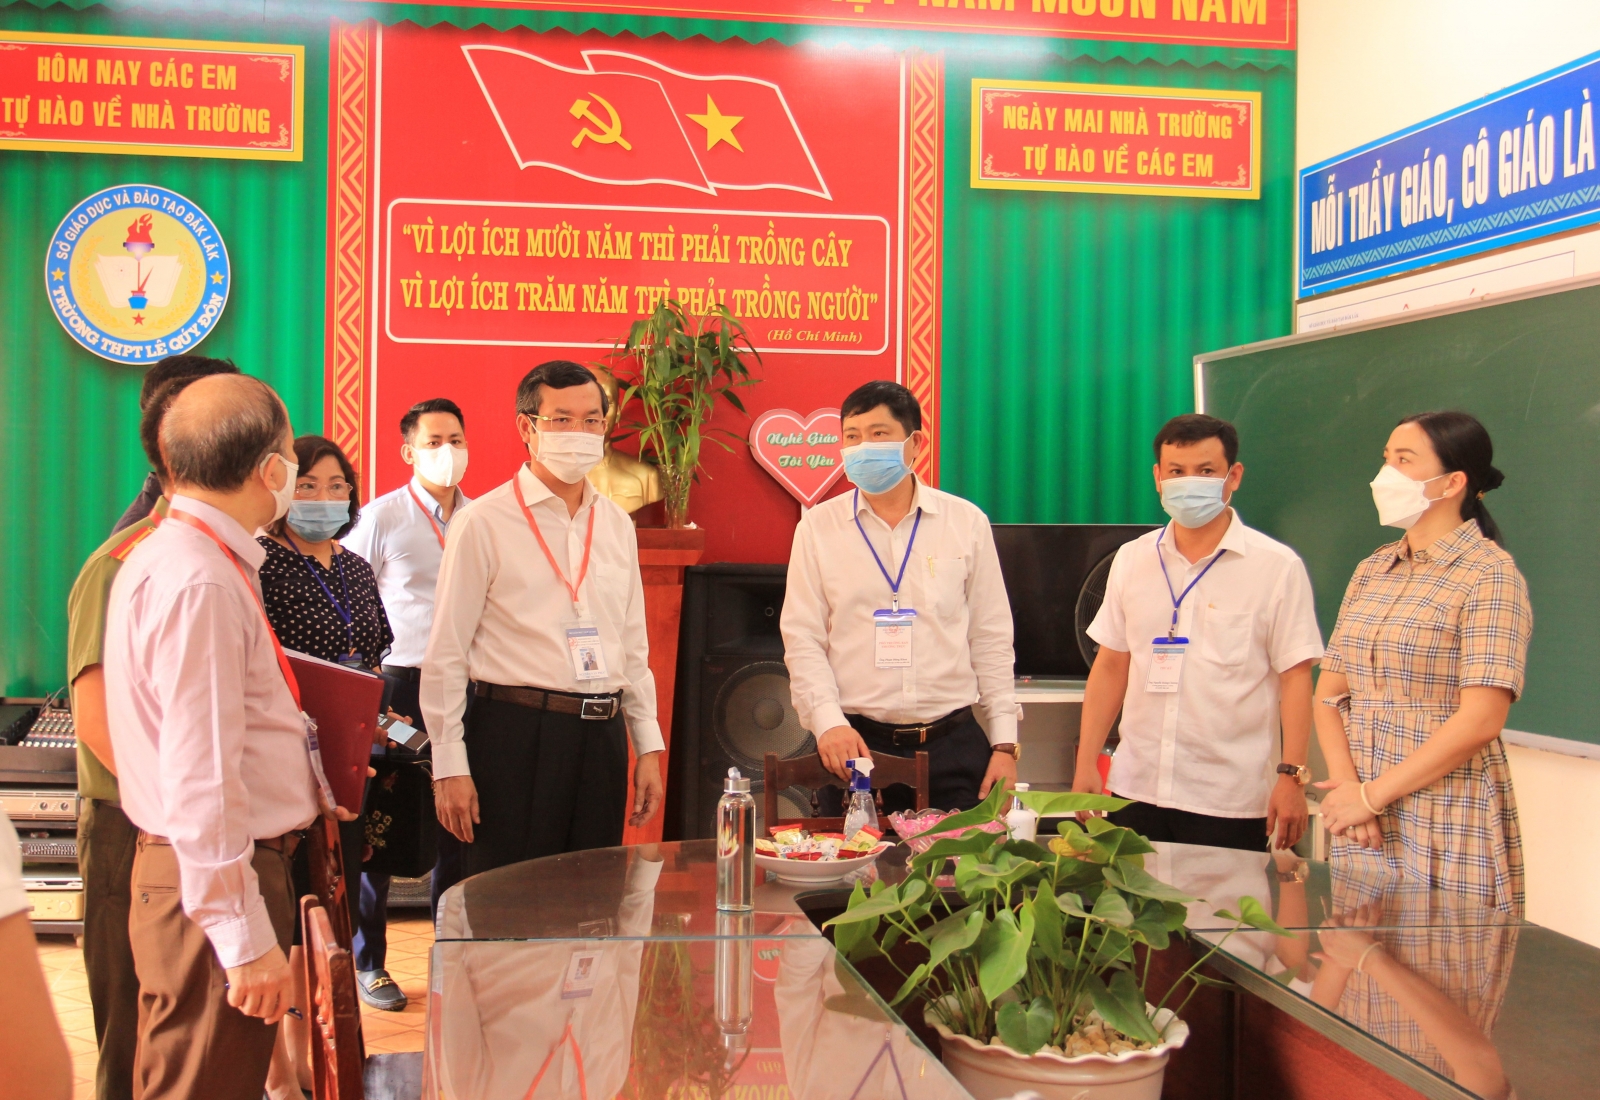 Thứ trưởng Nguyễn Văn Phúc kiểm tra chuẩn bị thi tốt nghiệp THPT tại Đắk Lắk